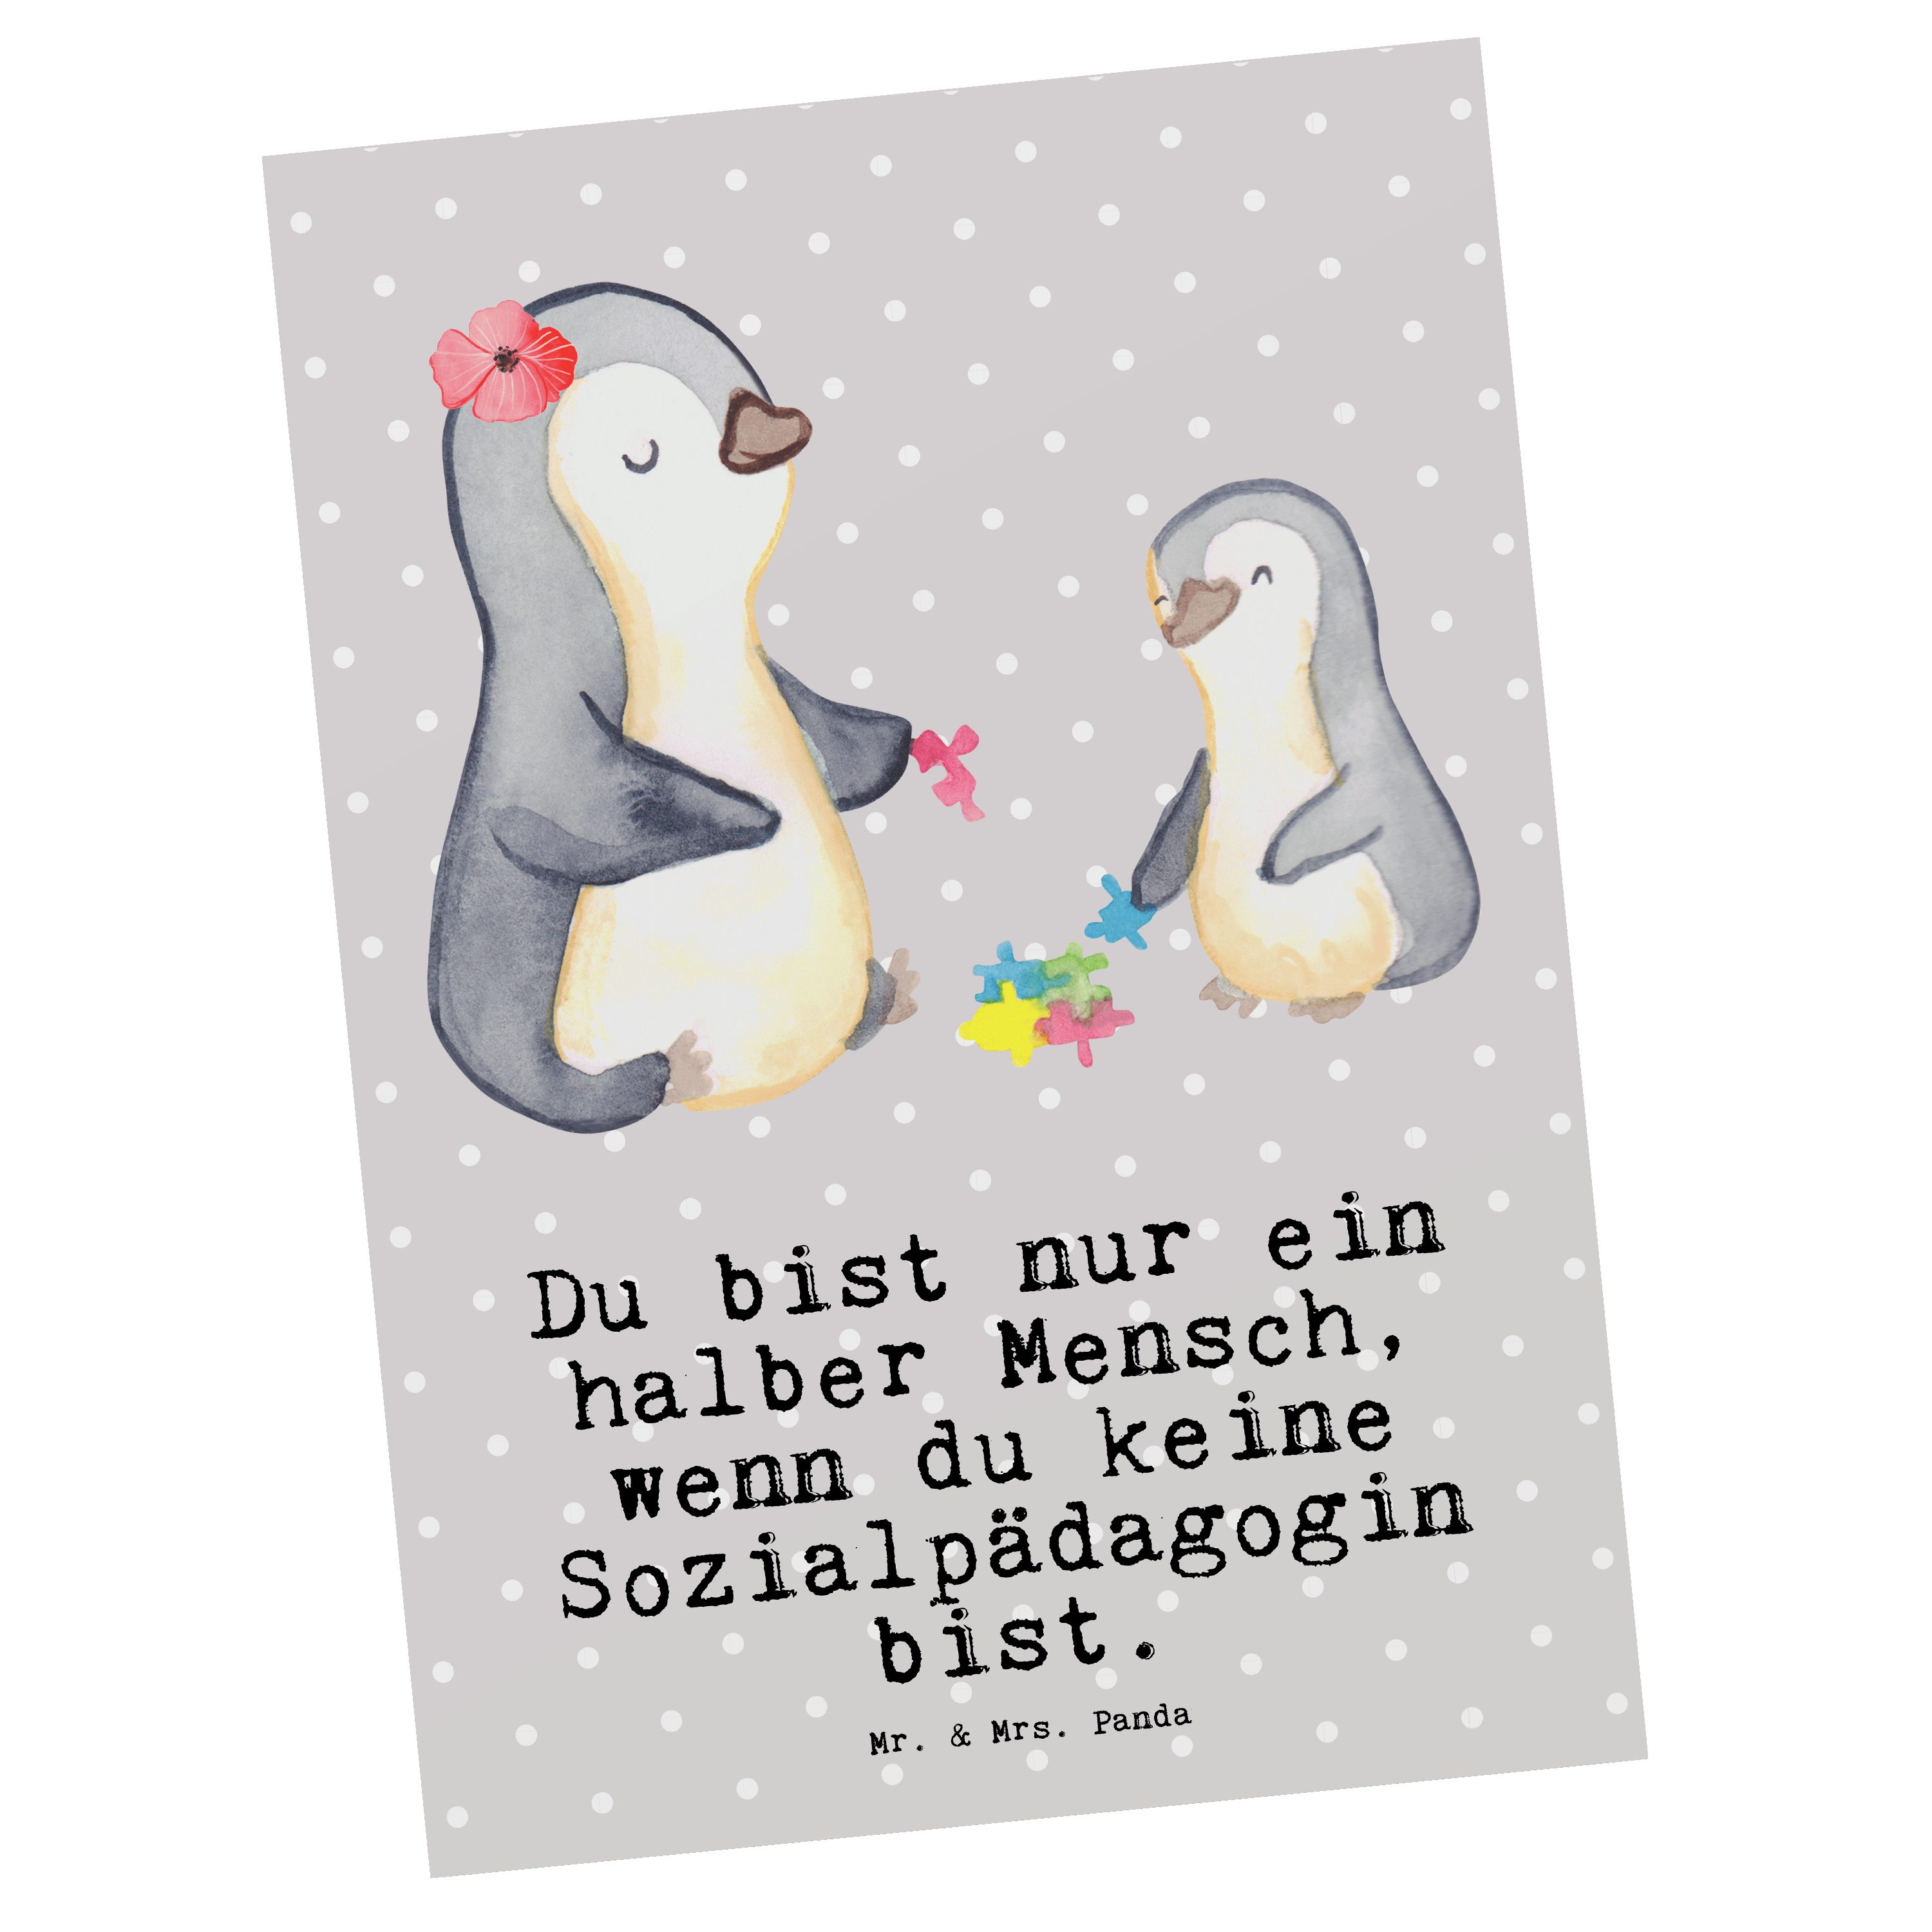 Mr. & Mrs. Panda Postkarte Sozialpädagogin mit Herz - Grau Pastell - Geschenk, Einladungskarte